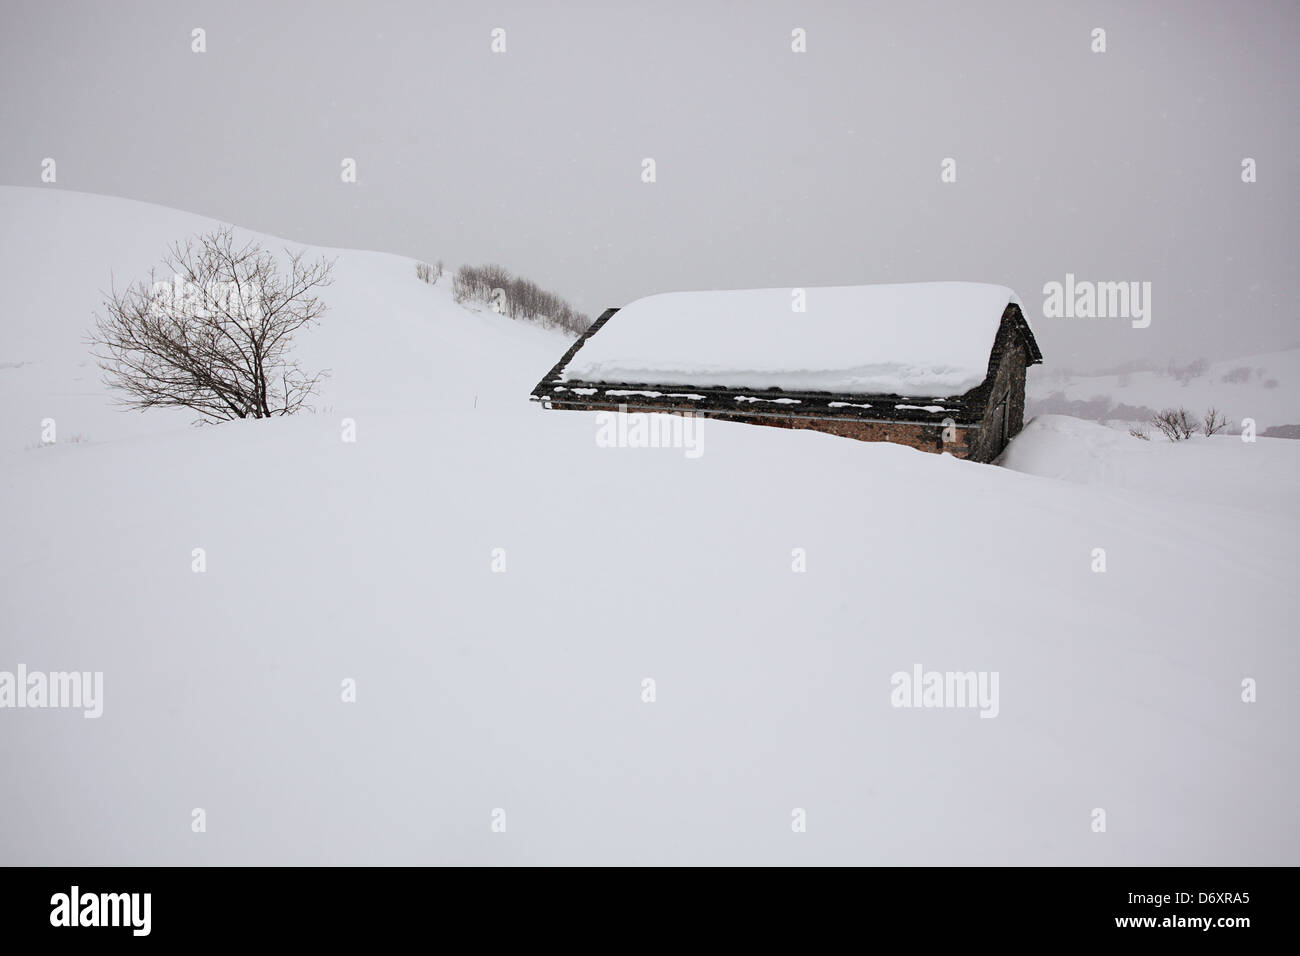 Skiing in Meribel, France Stock Photo